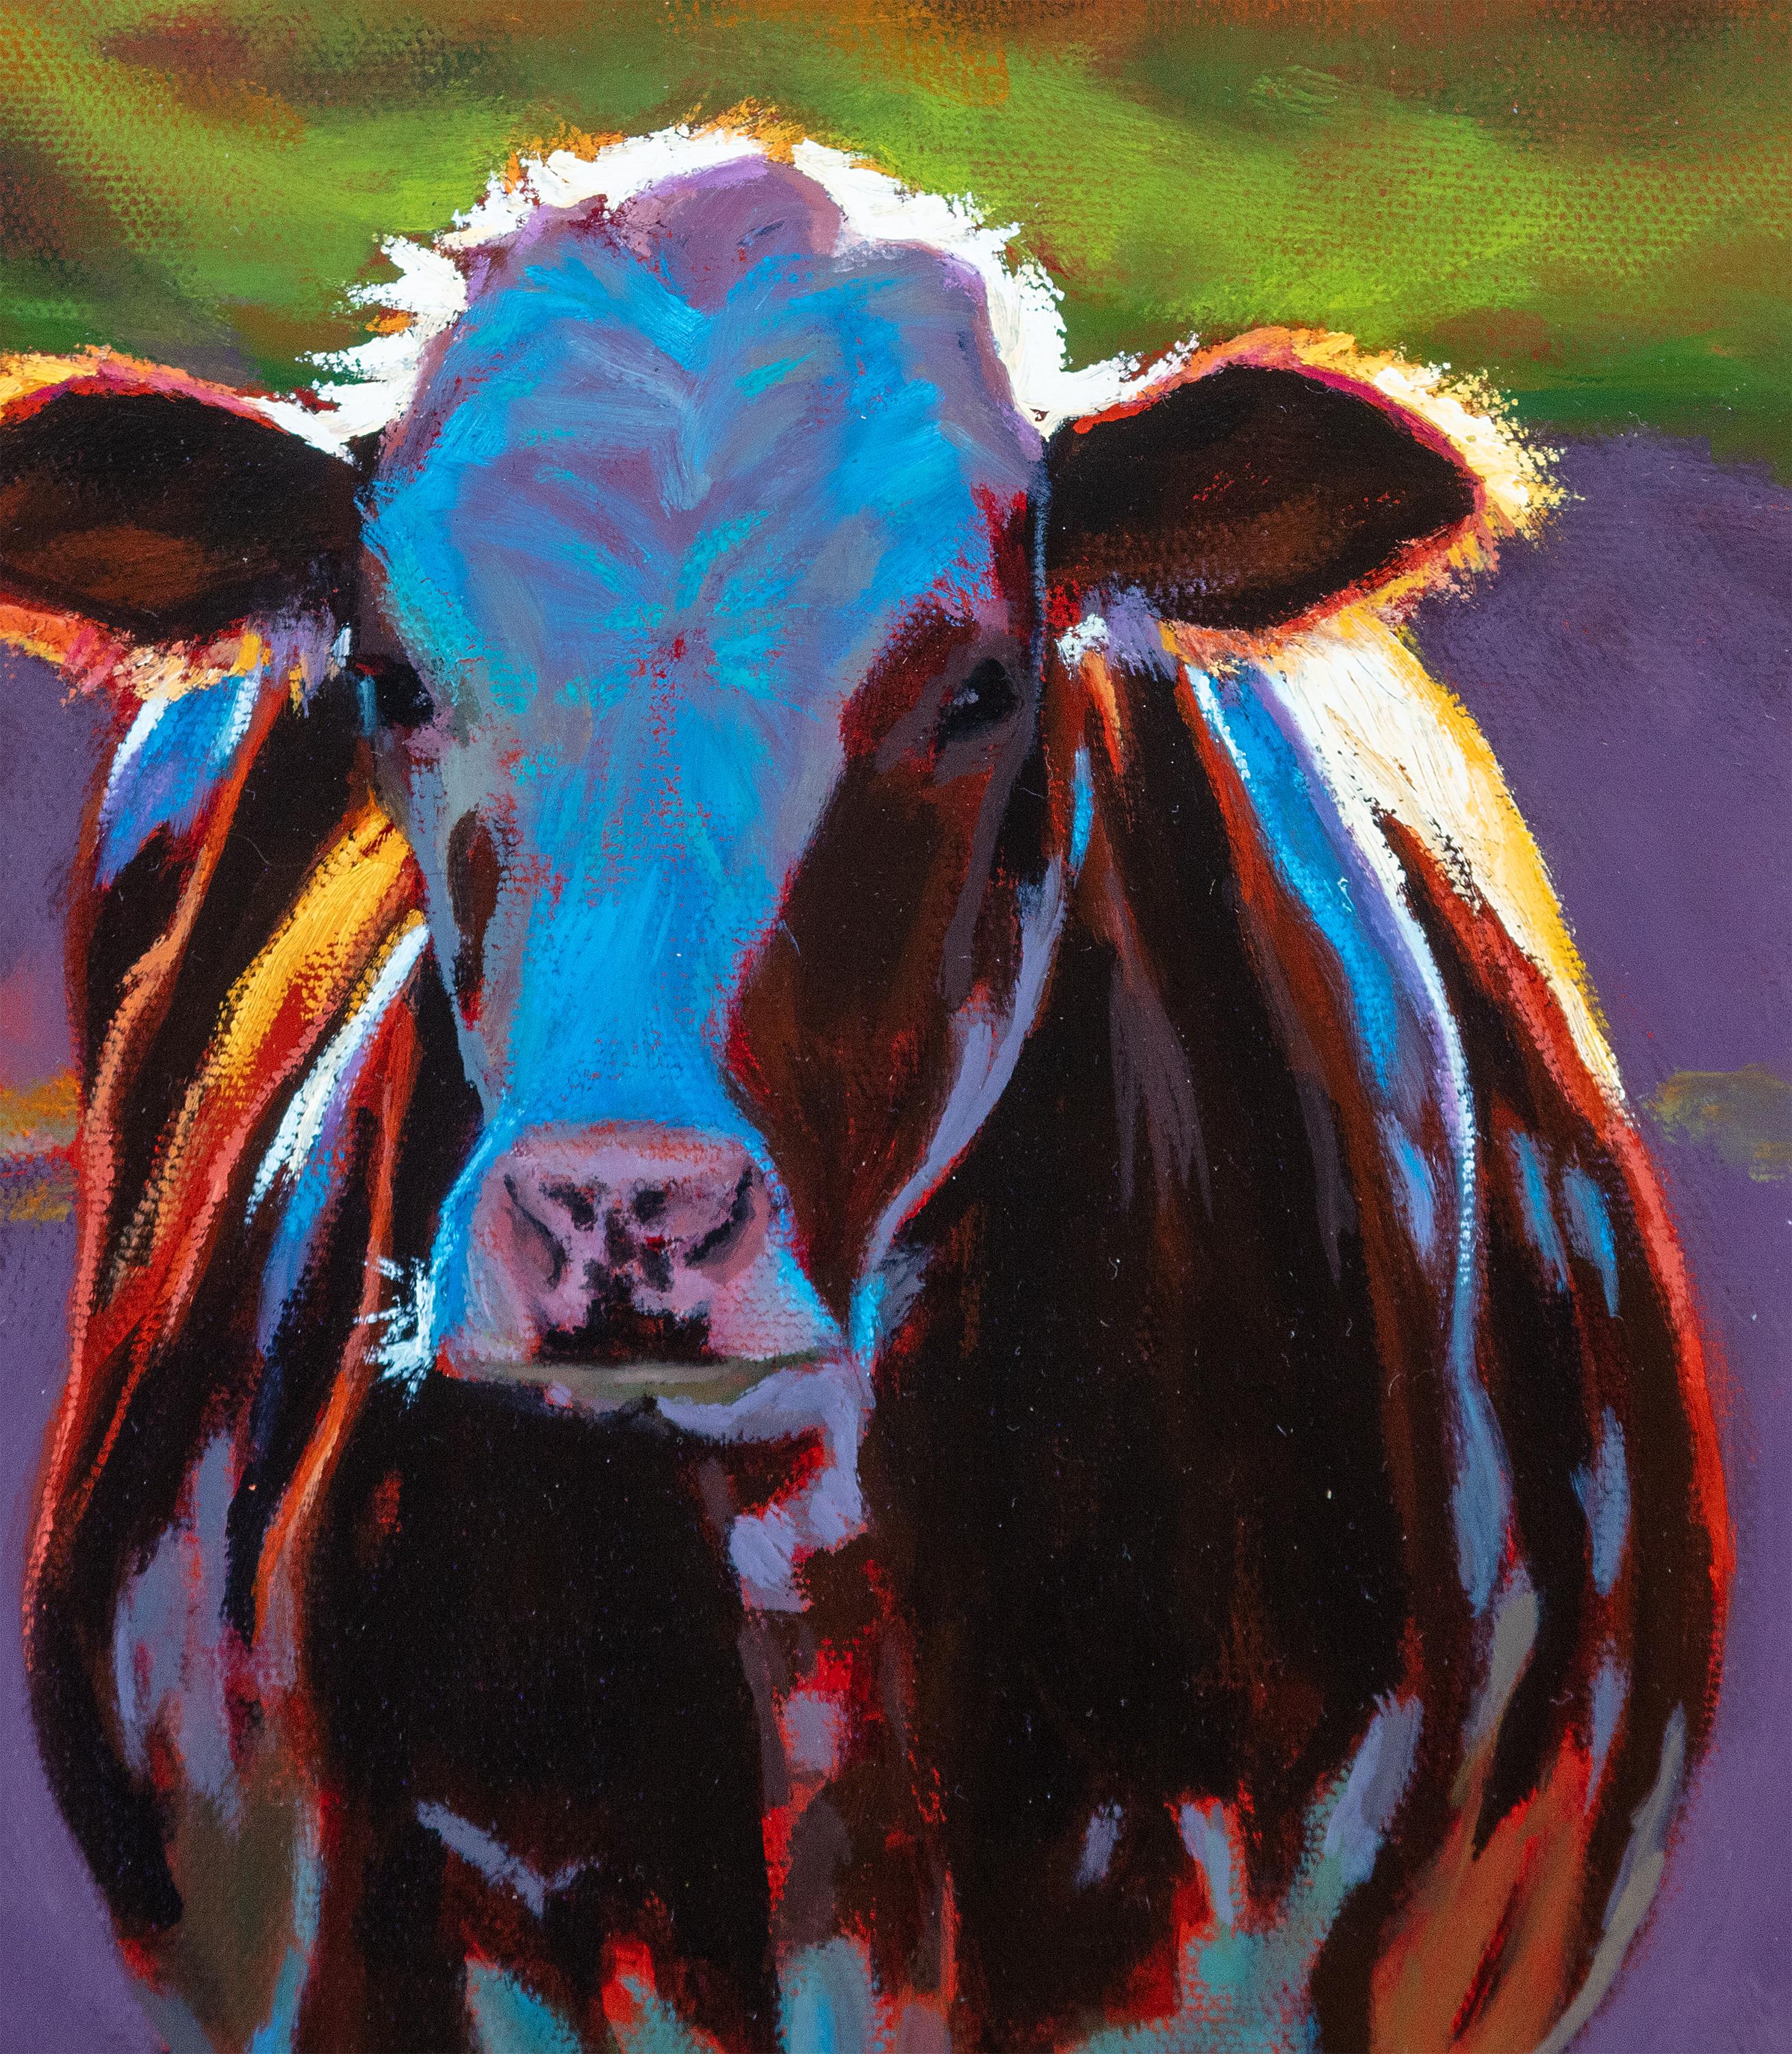 Die Künstlerin Cathryn Ruvalcaba aus Wisconsin schafft Bilder klassischer Bauernhofszenen aus dem Mittleren Westen, indem sie die Tiere, die diese Felder bevölkern, heranzoomt. Ihre Verwendung von Ölfarbe auf Gesso-Karton bietet eine realistische